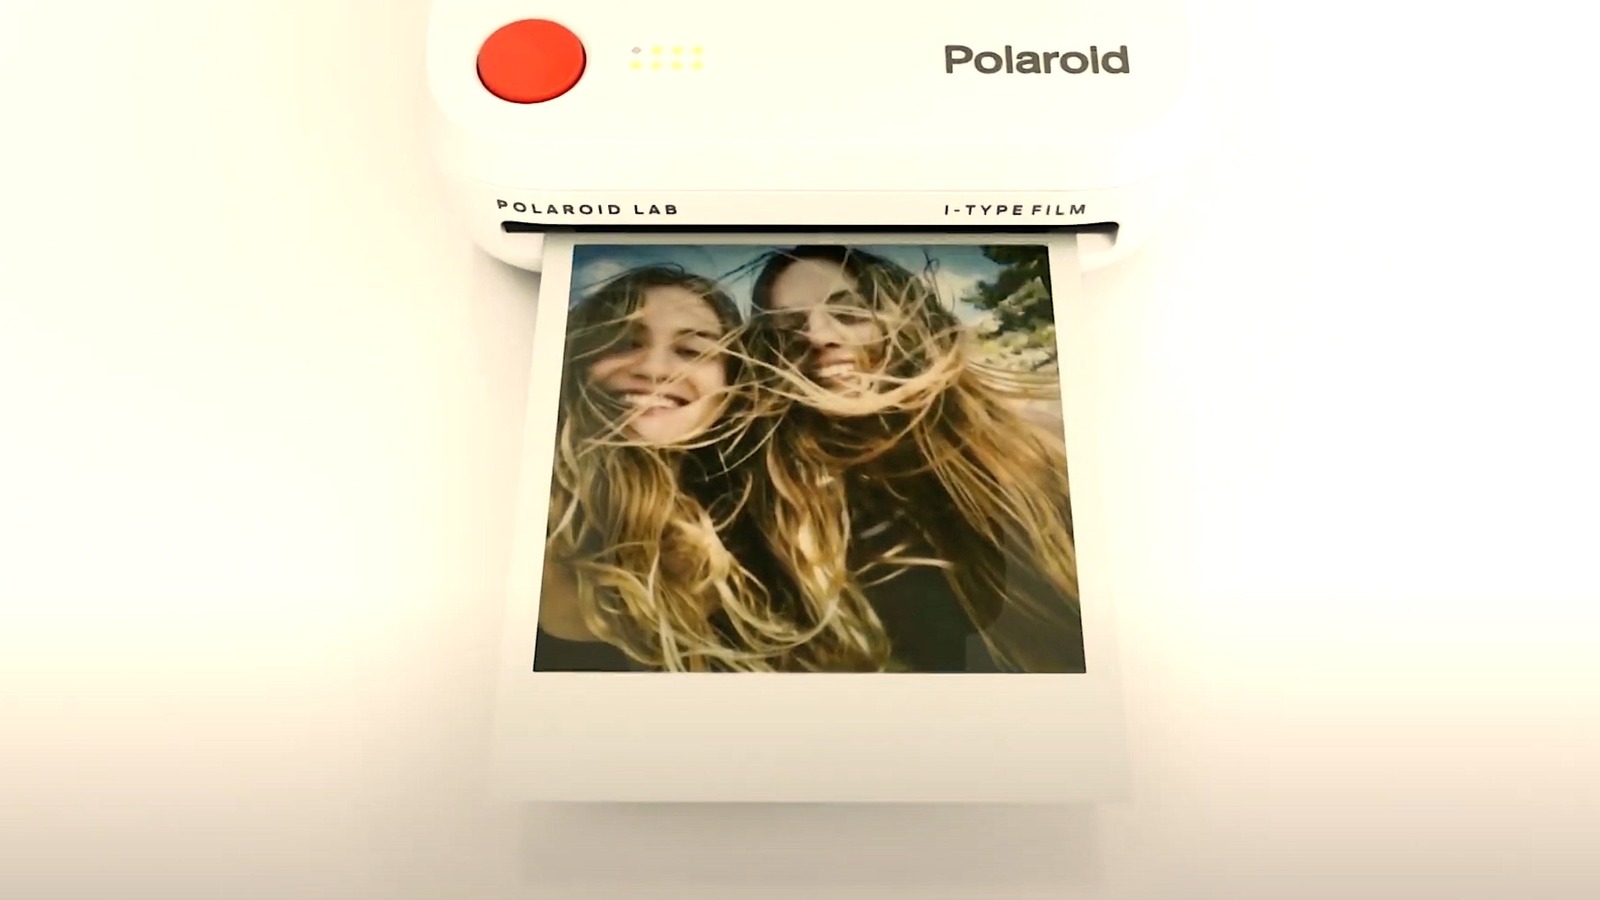 Estas impresoras Polaroid pueden convertir su teléfono inteligente en una cámara instantánea